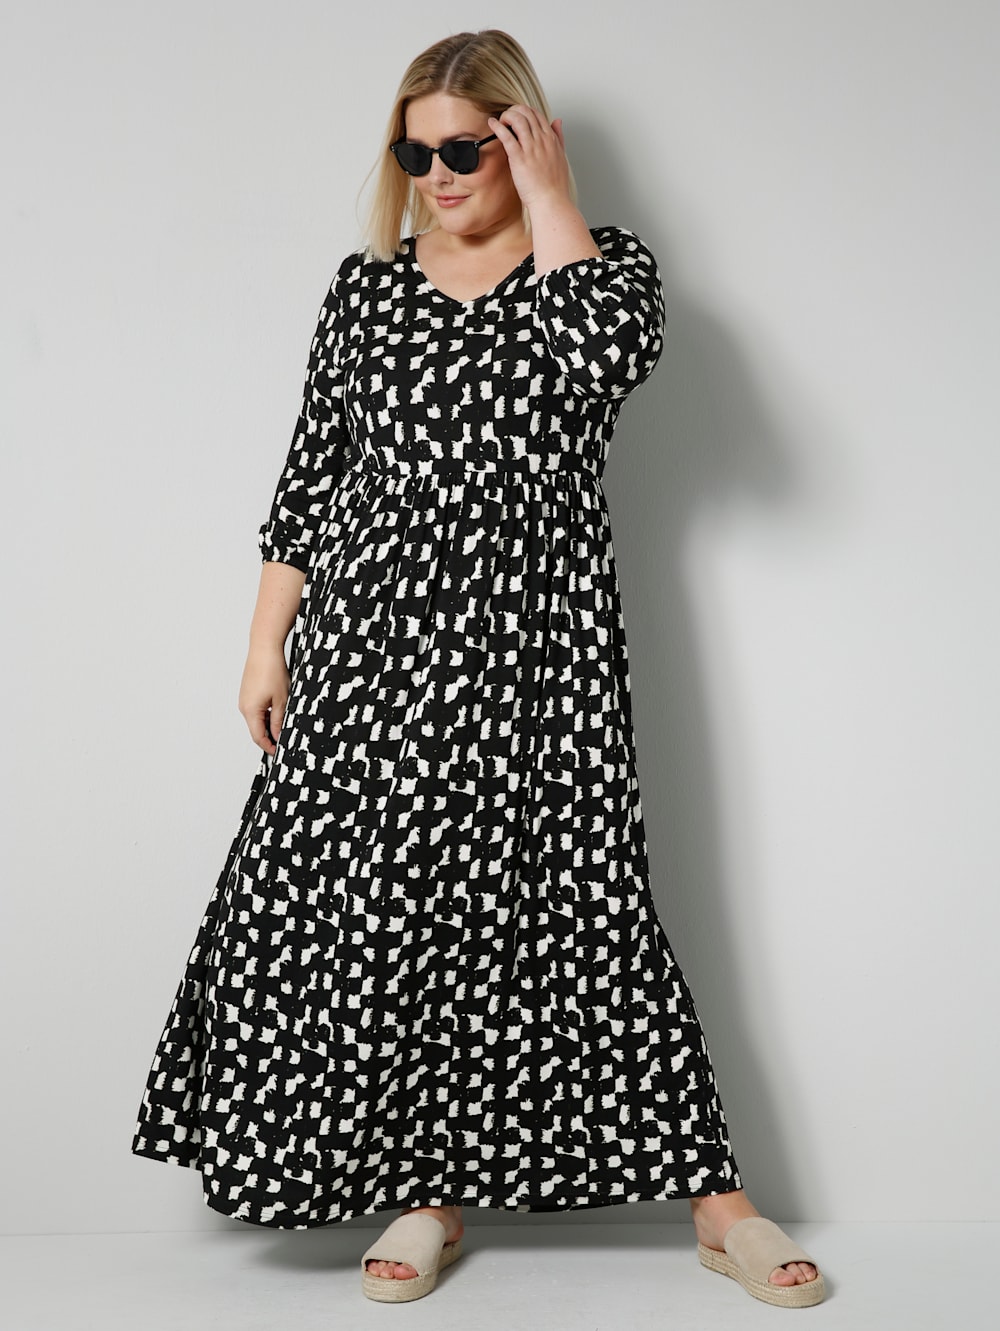 Onhandig Vertrouwelijk bijstand Sara Lindholm Jersey jurk in trendy maxi-lengte | Happy Size